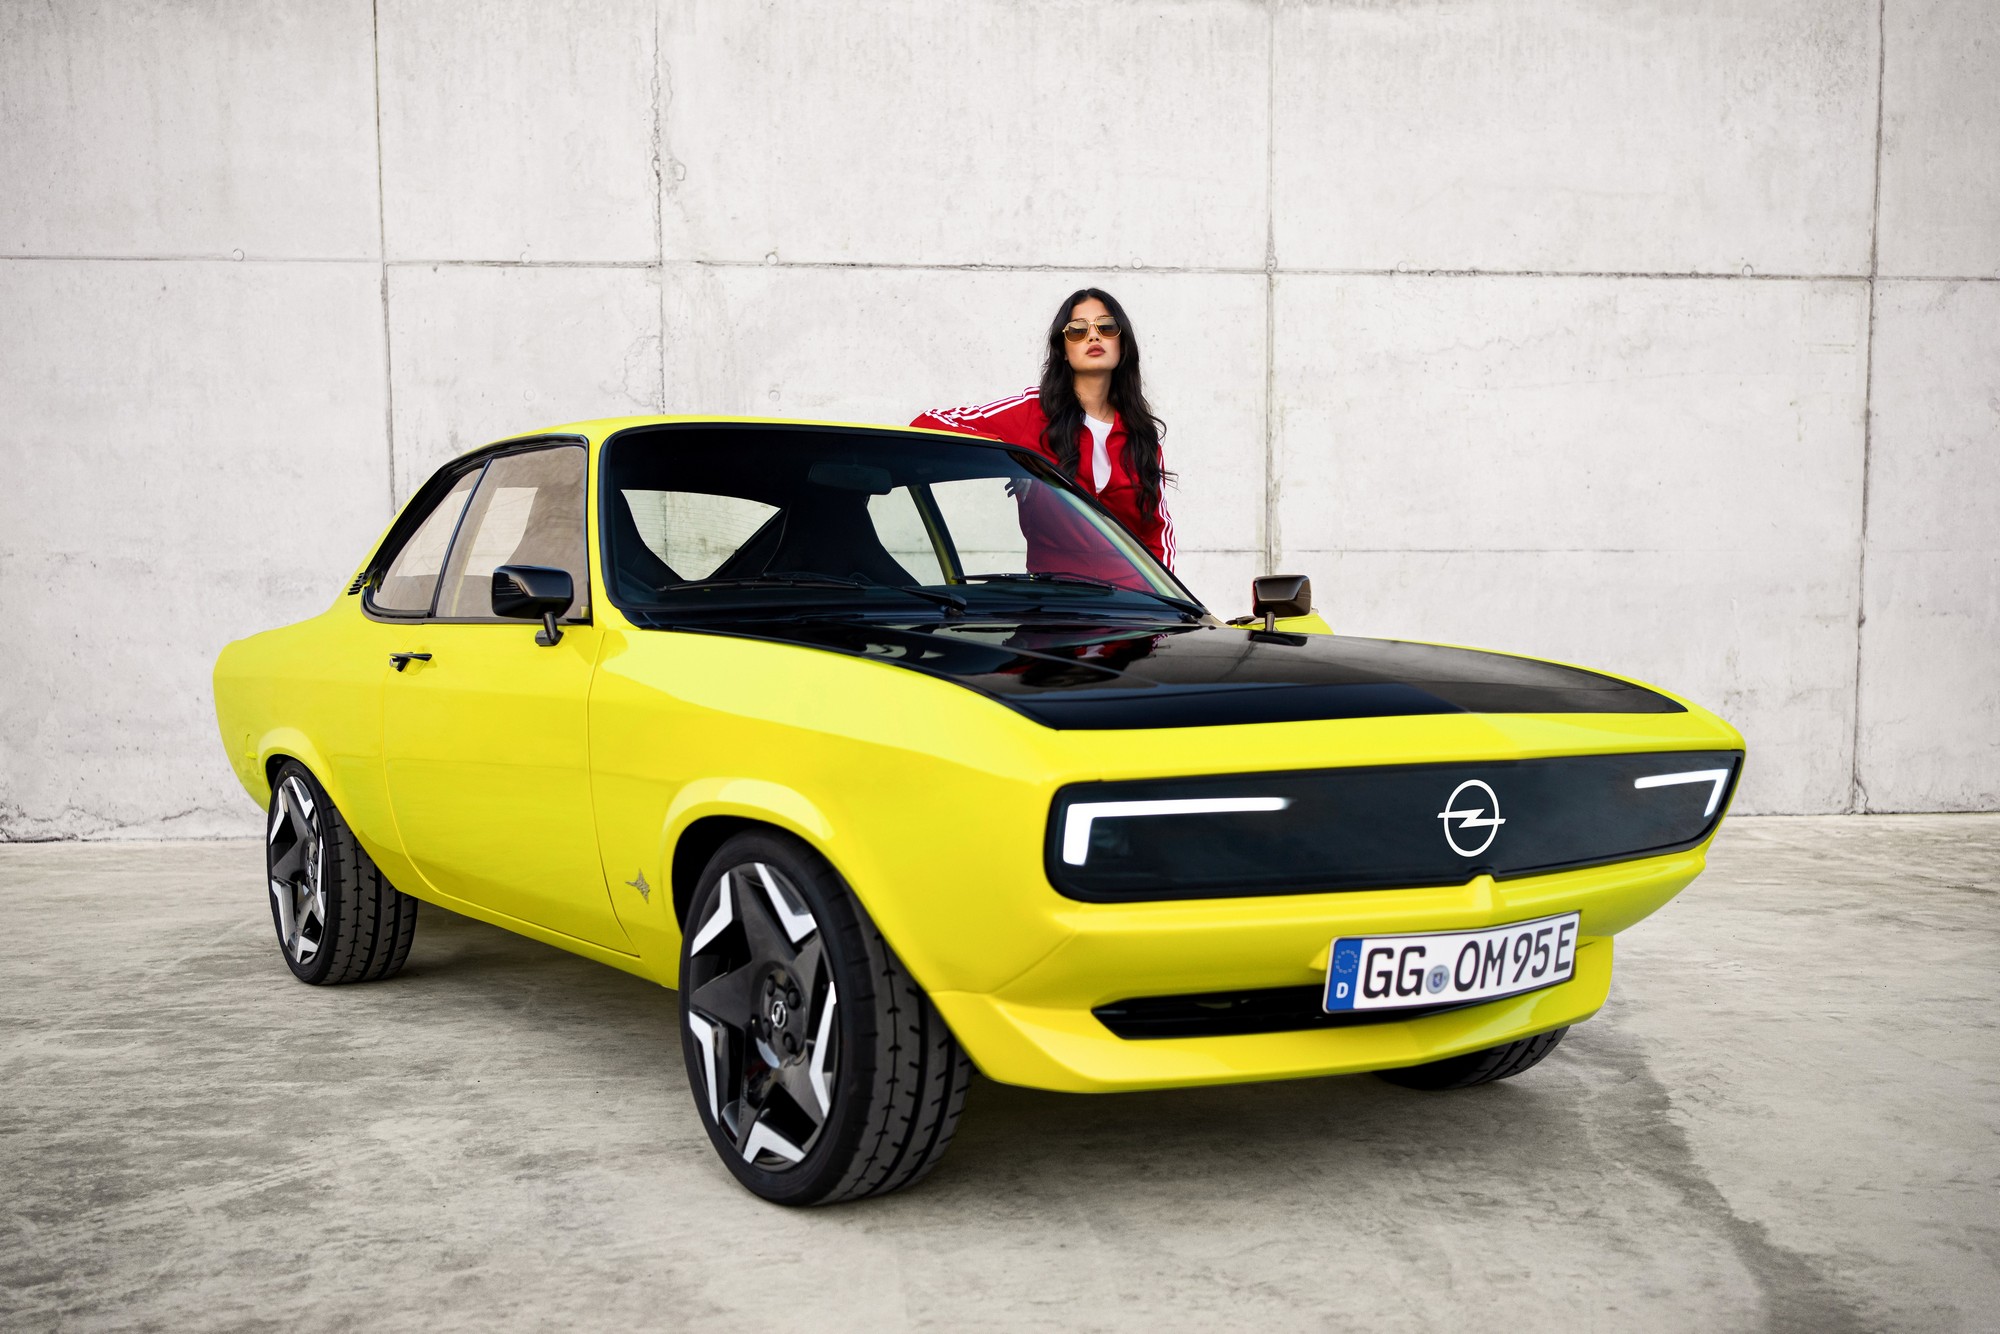 Opel рассказал все подробности об электрическом рестомоде Opel Manta GSe  ElektroMOD - 147 л.с., 31 кВтч и 200 км [видео]